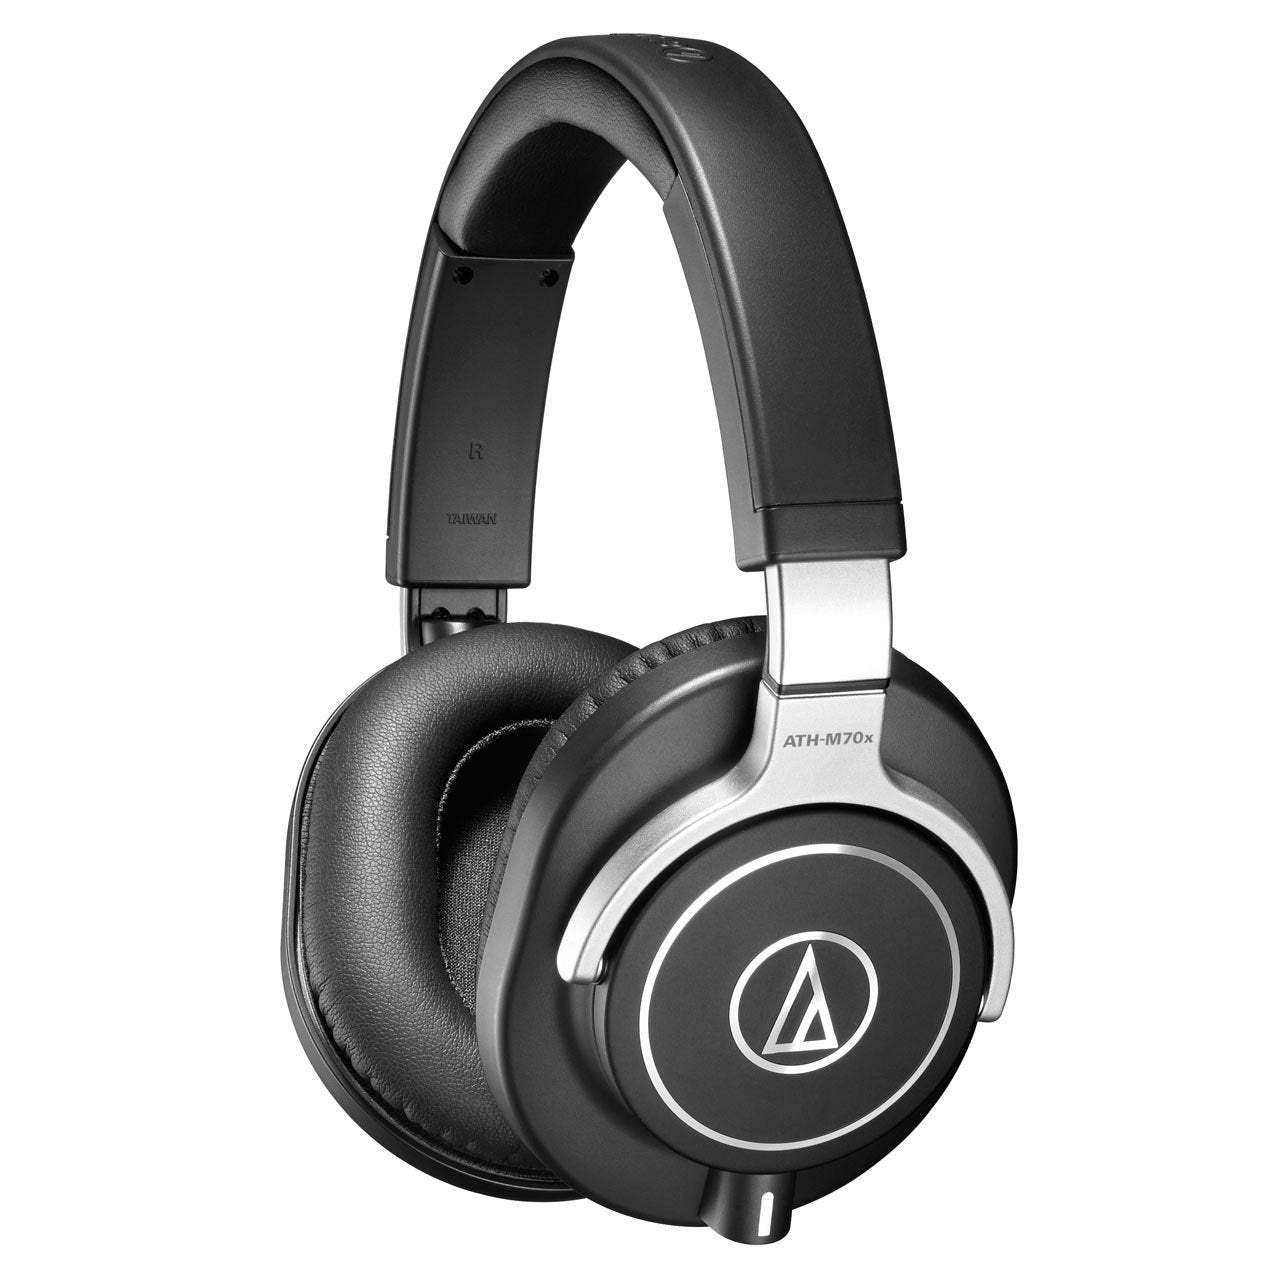 Closed Headphones - Audio-Technica ATH-M70x Studio Monitoring Headphones